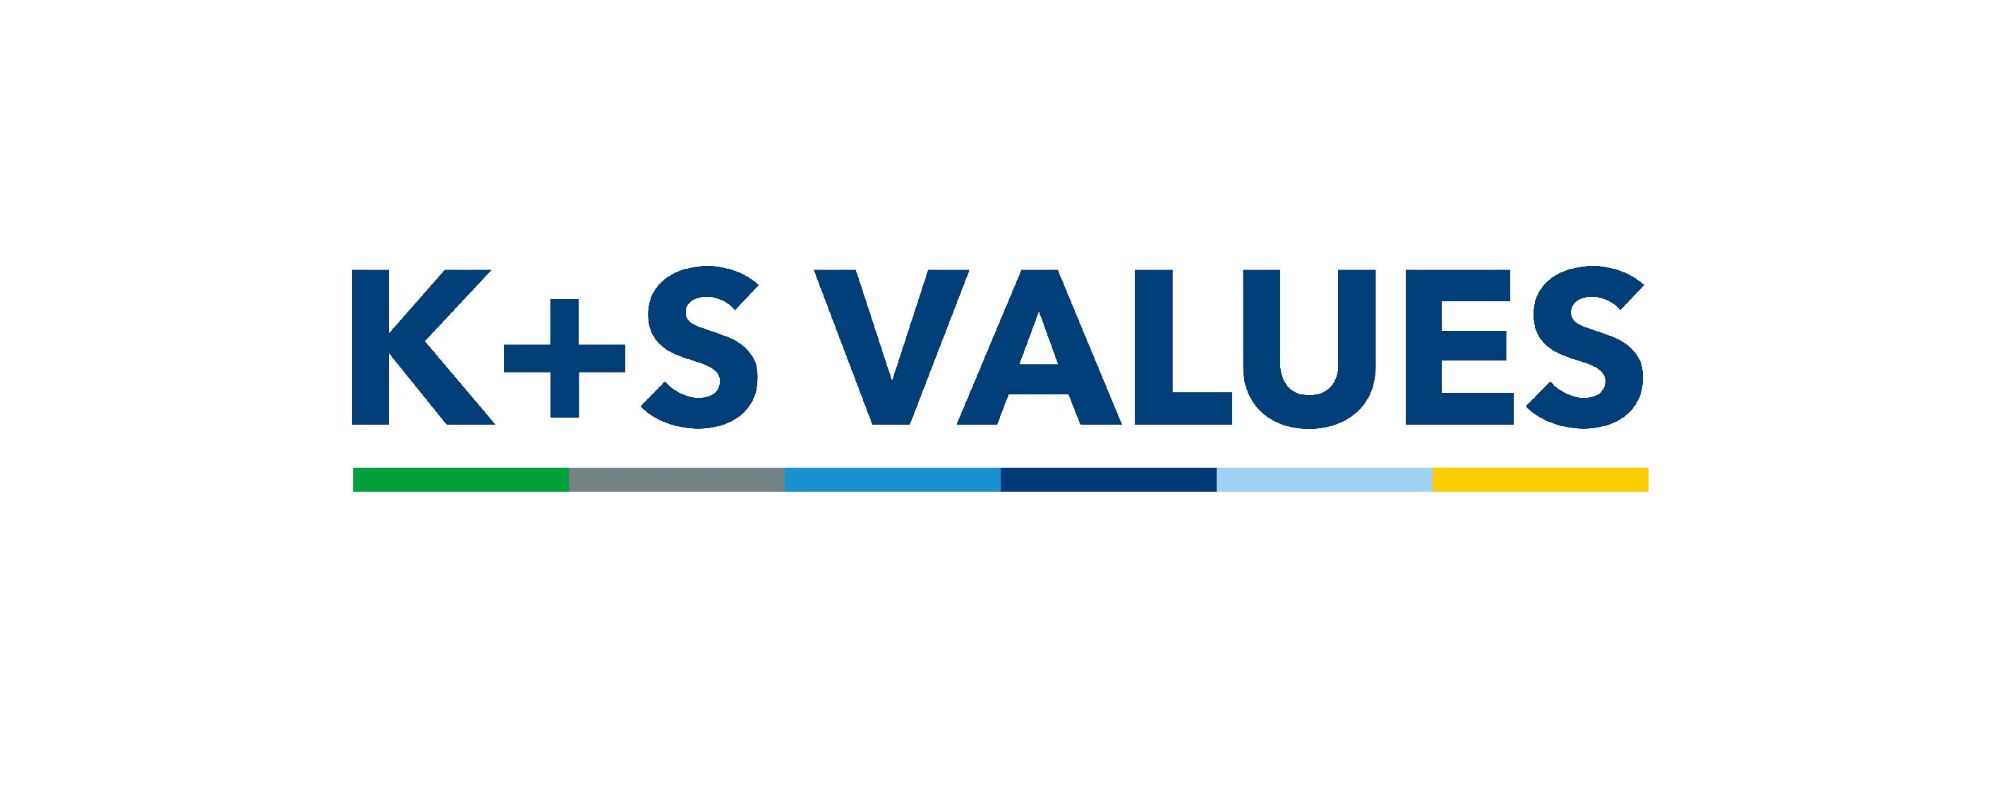 K+S values